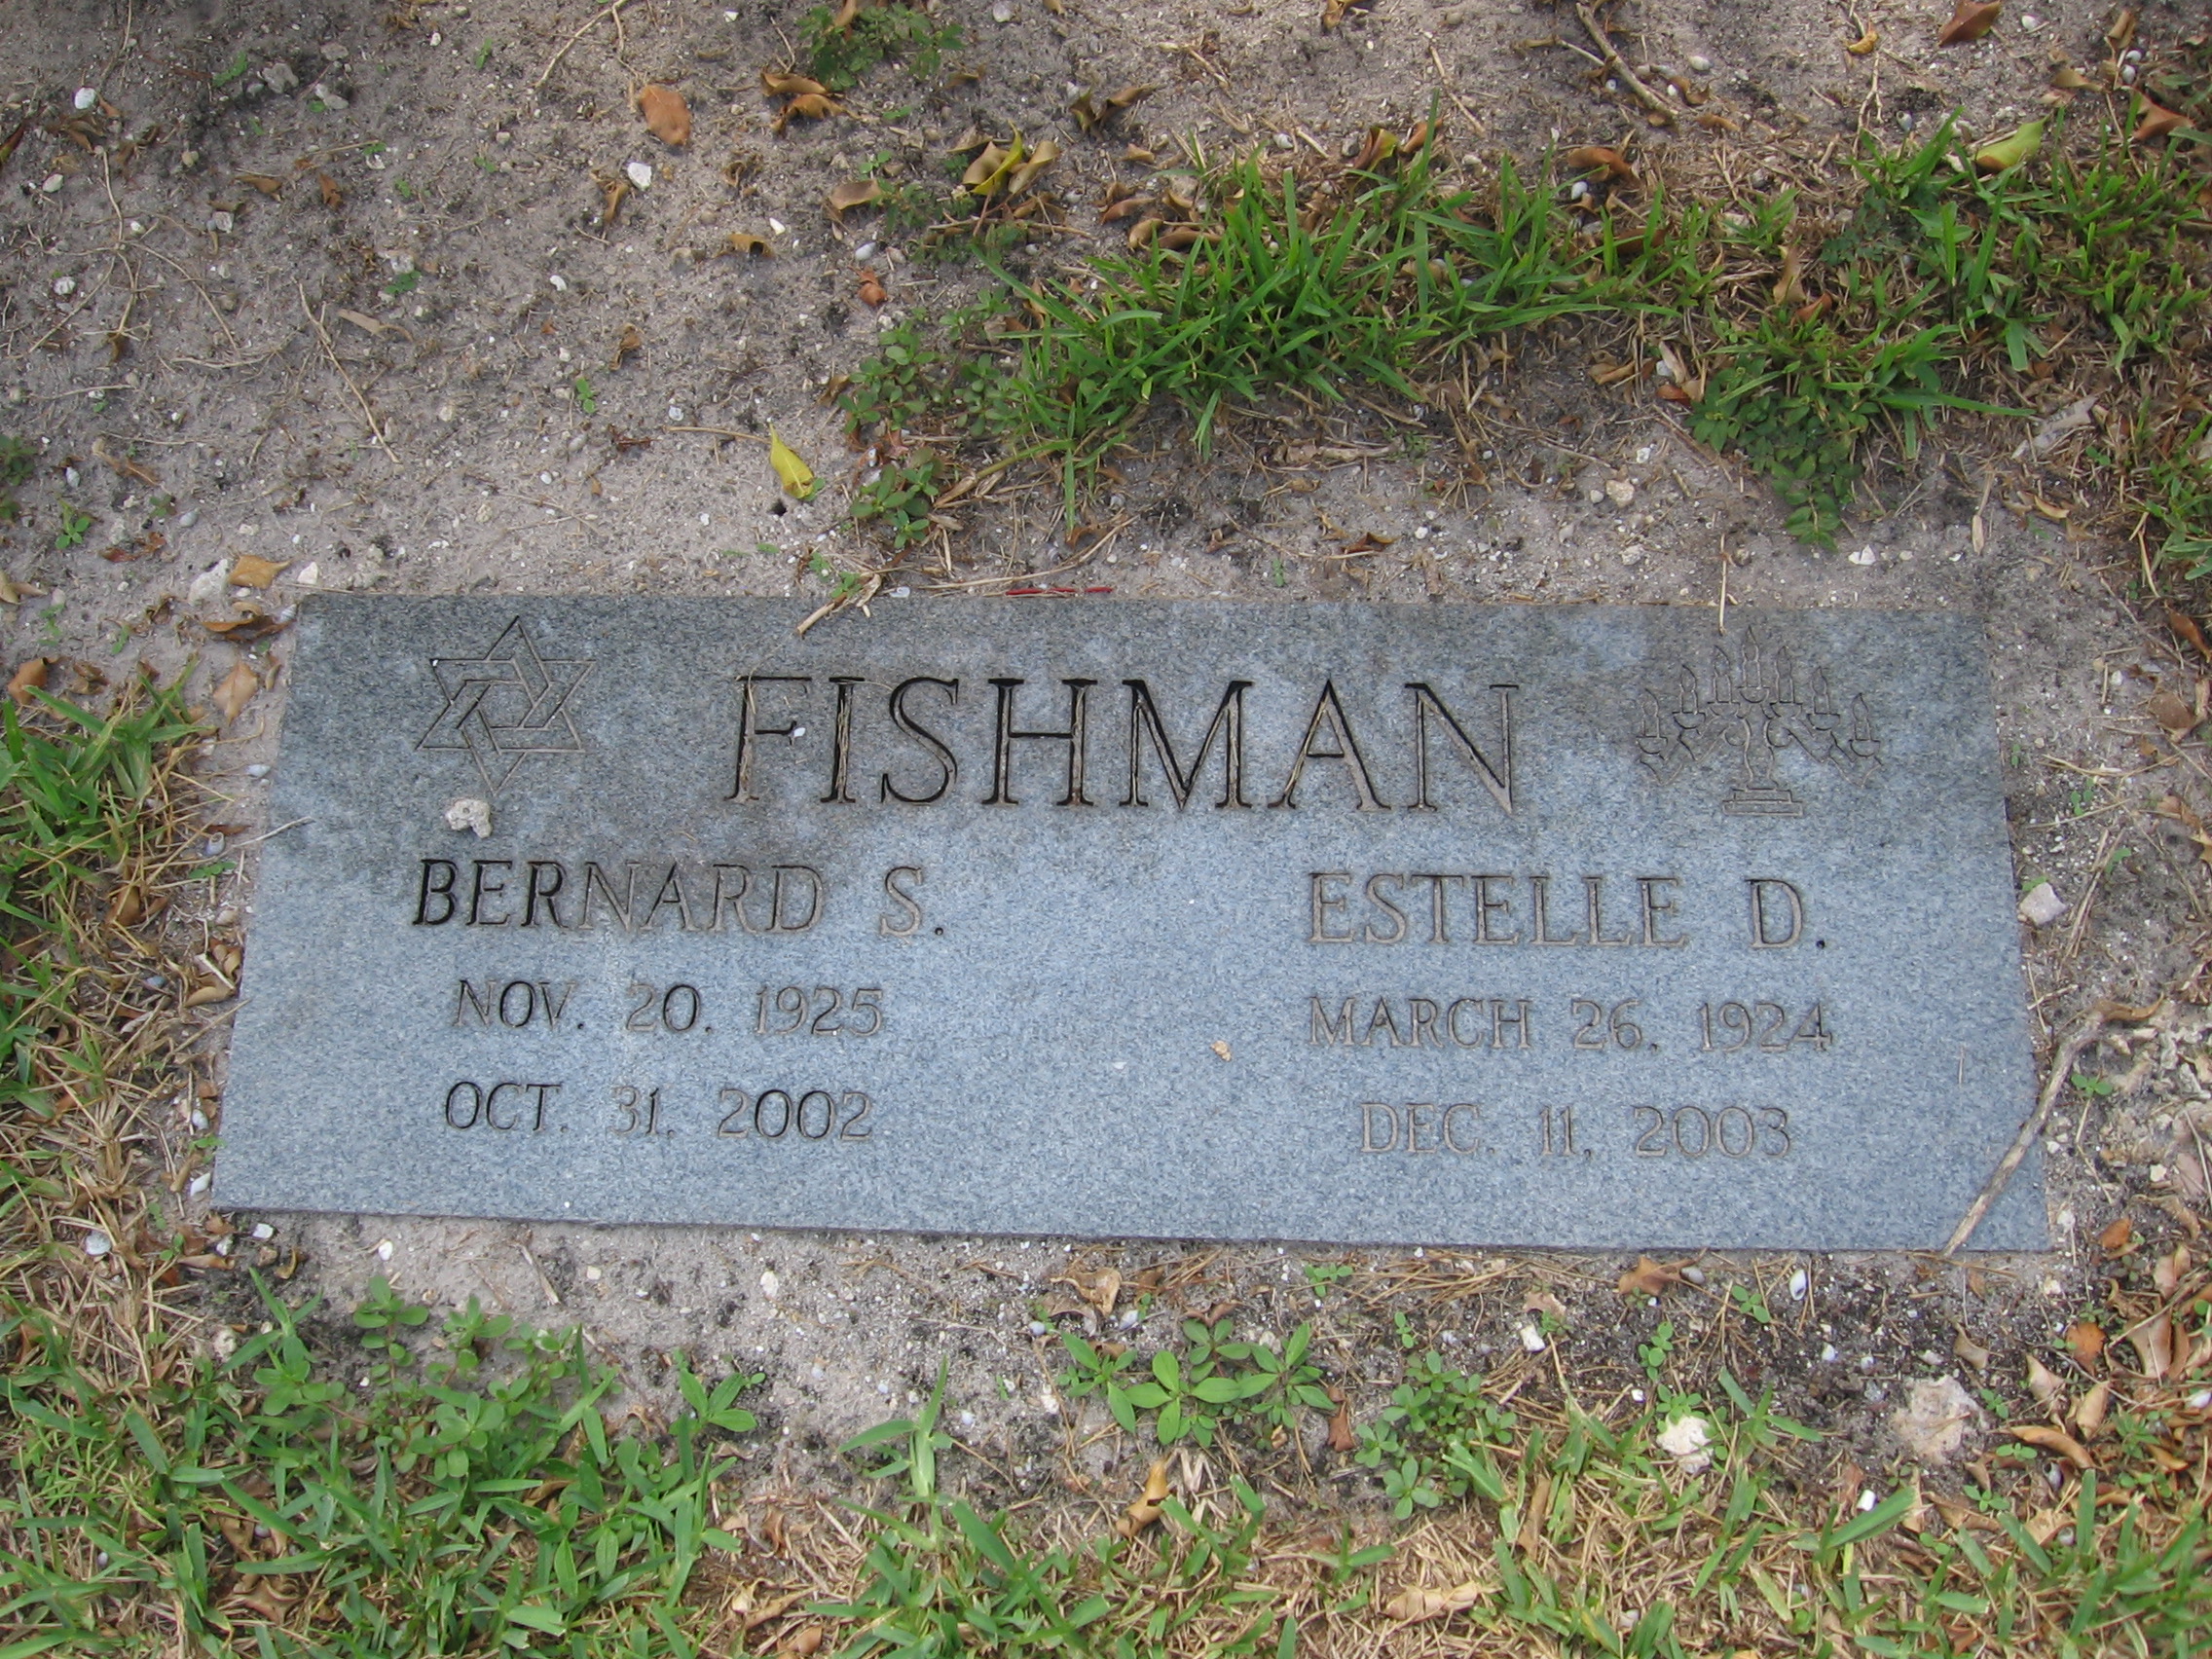 Bernard S Fishman